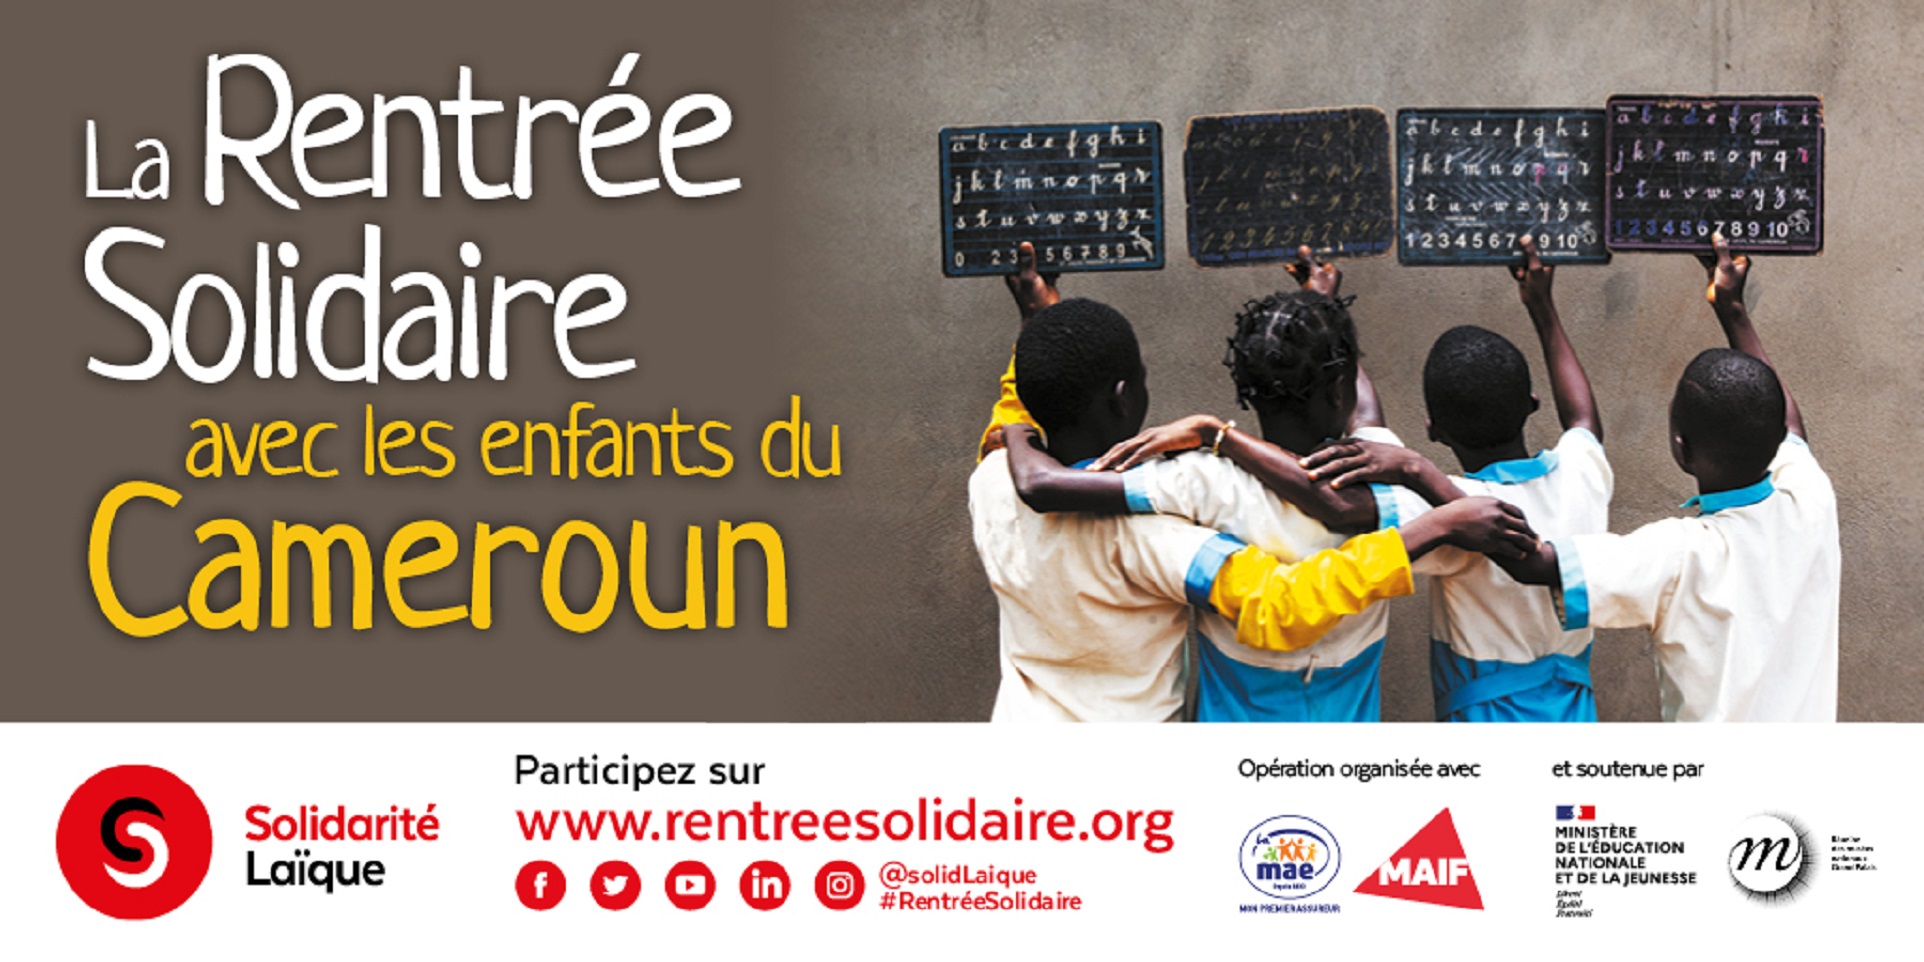 Le collège Lamartine est solidaire avec les enfants du Cameroun